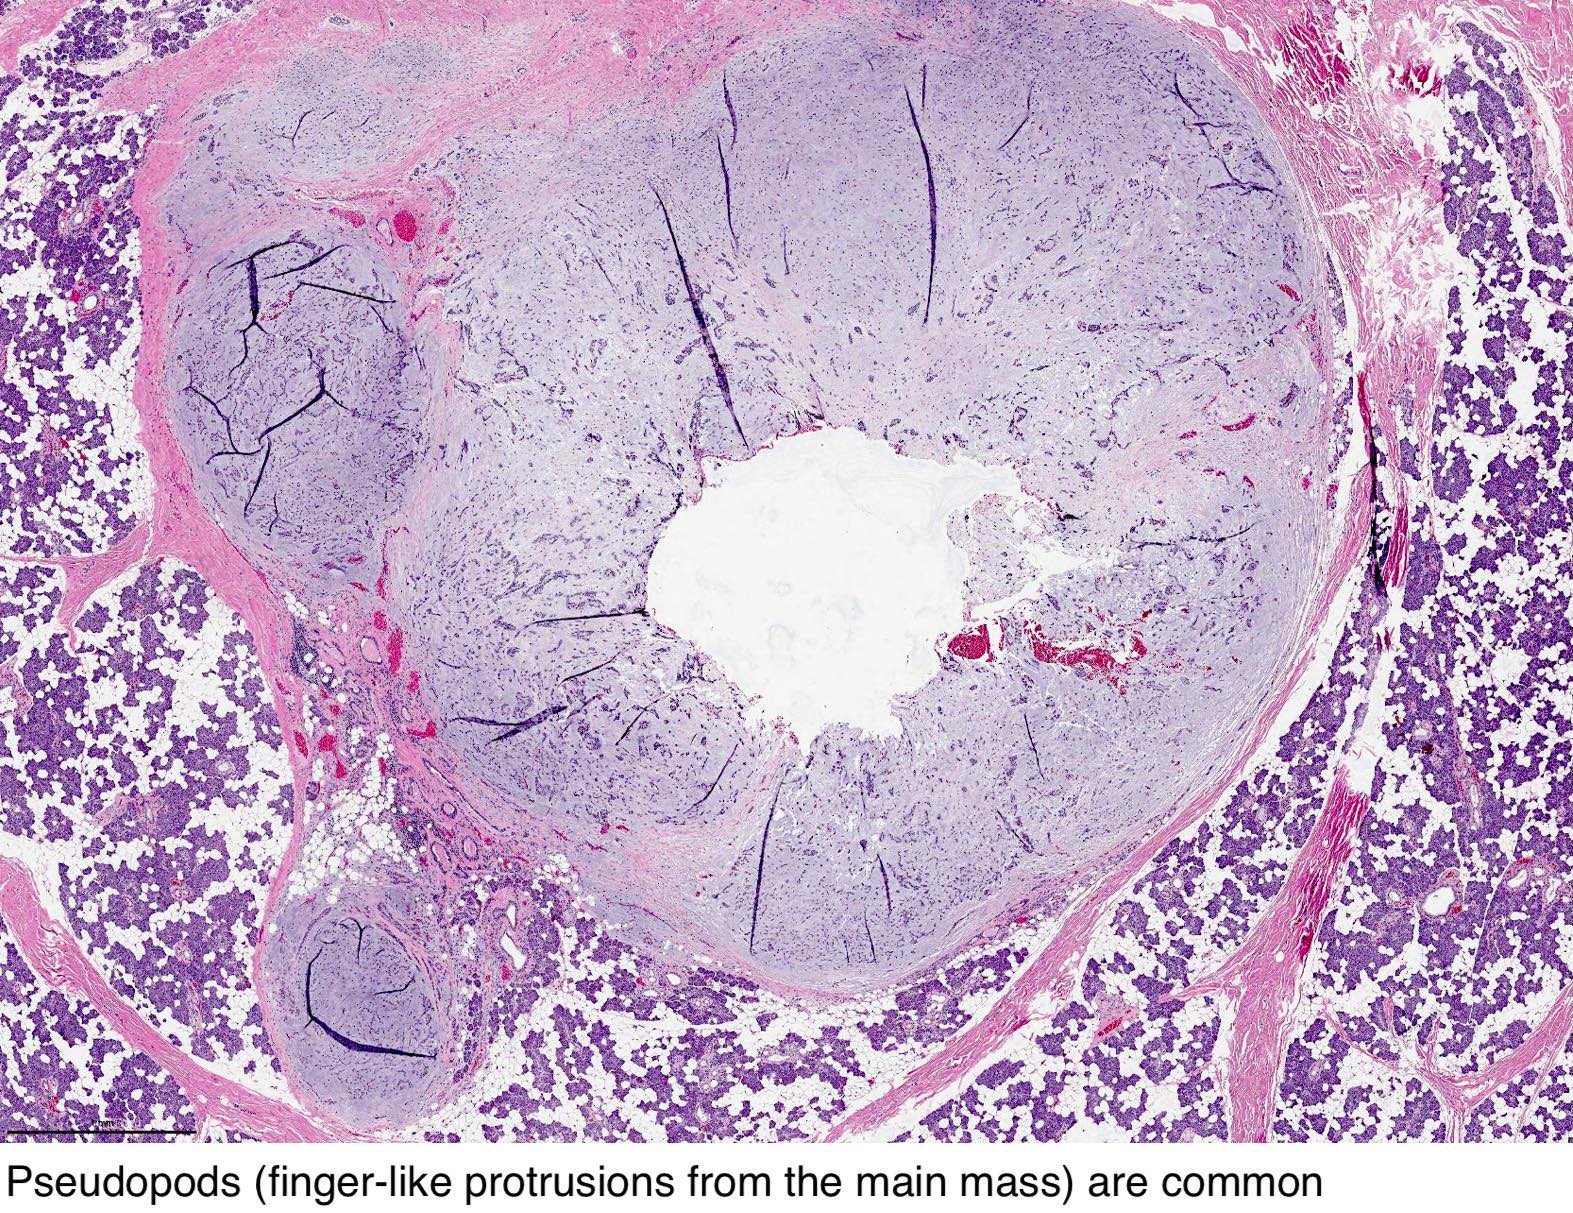 pleomorphic adenoma histology pathology outlines)